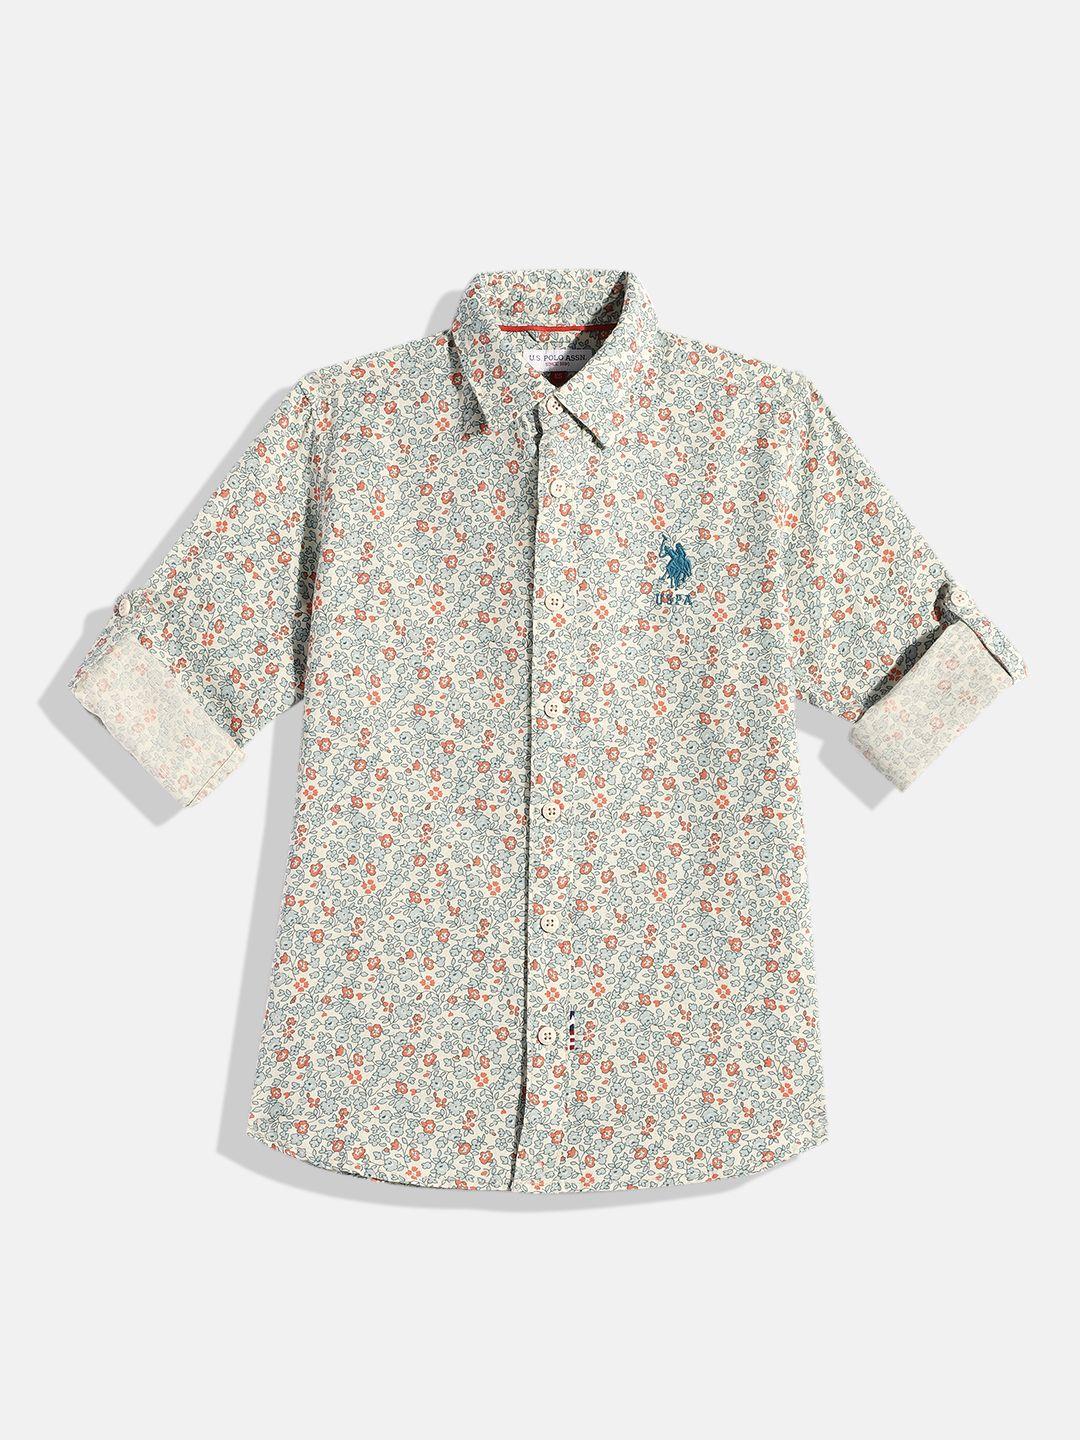 u.s. polo assn. kids boys floral printed opaque cotton linen casual shirt